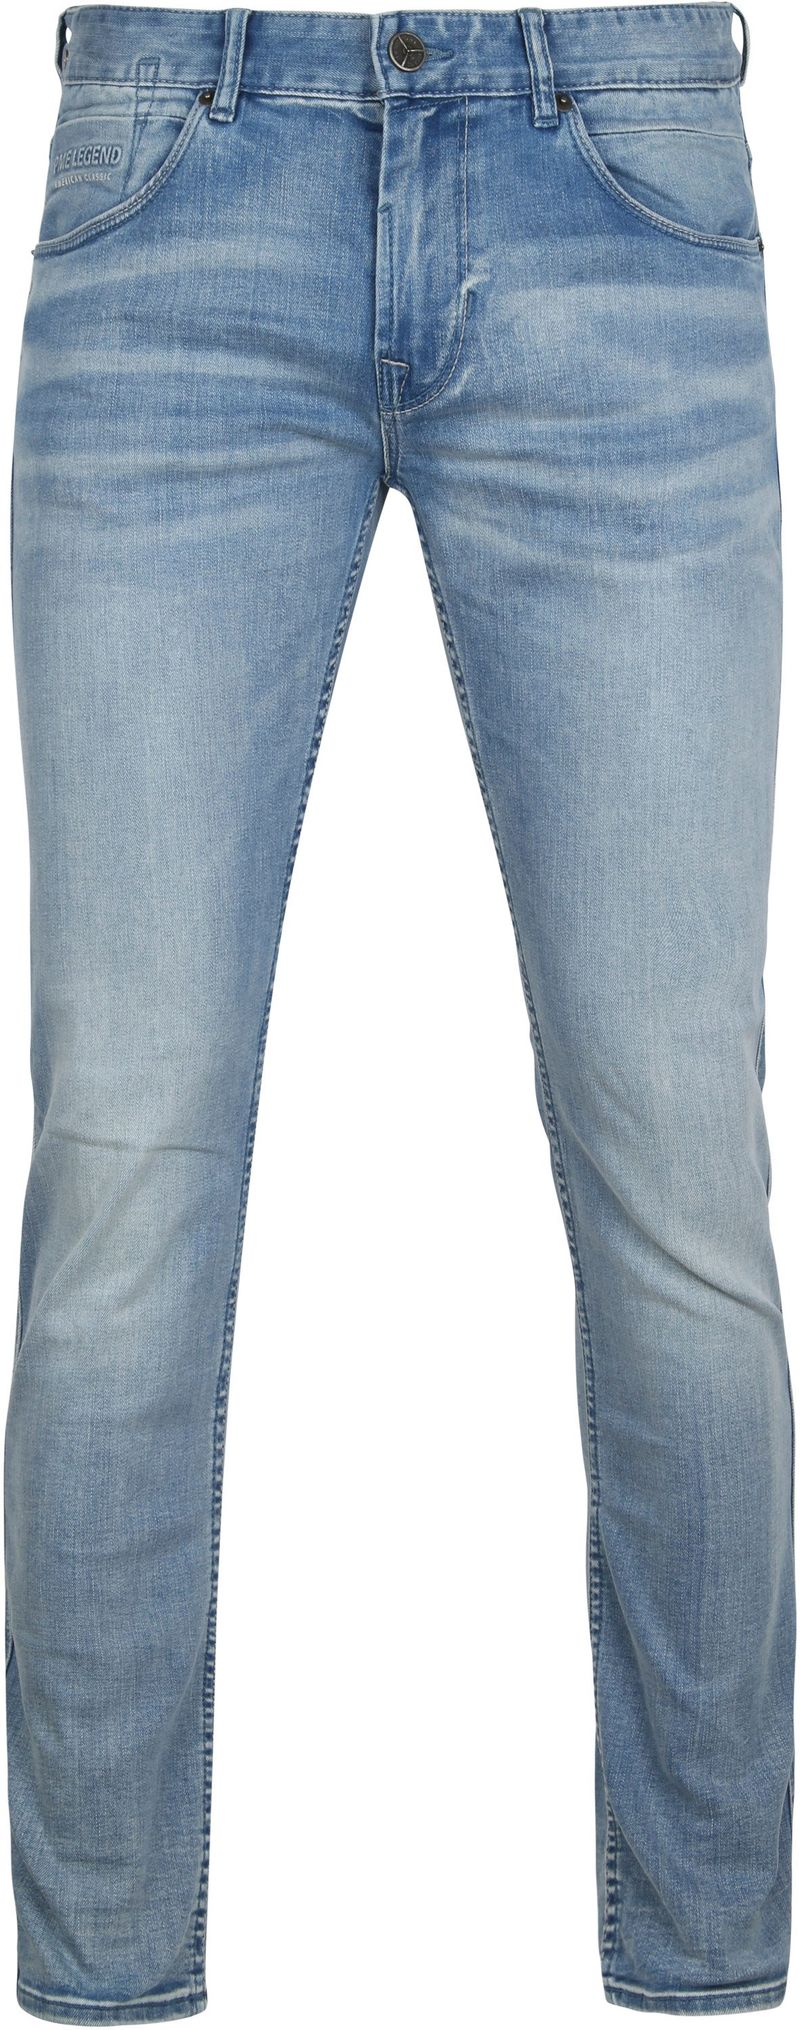 PME Legend Nightflight Jeans Blau - Größe W 31 - L 32 günstig online kaufen